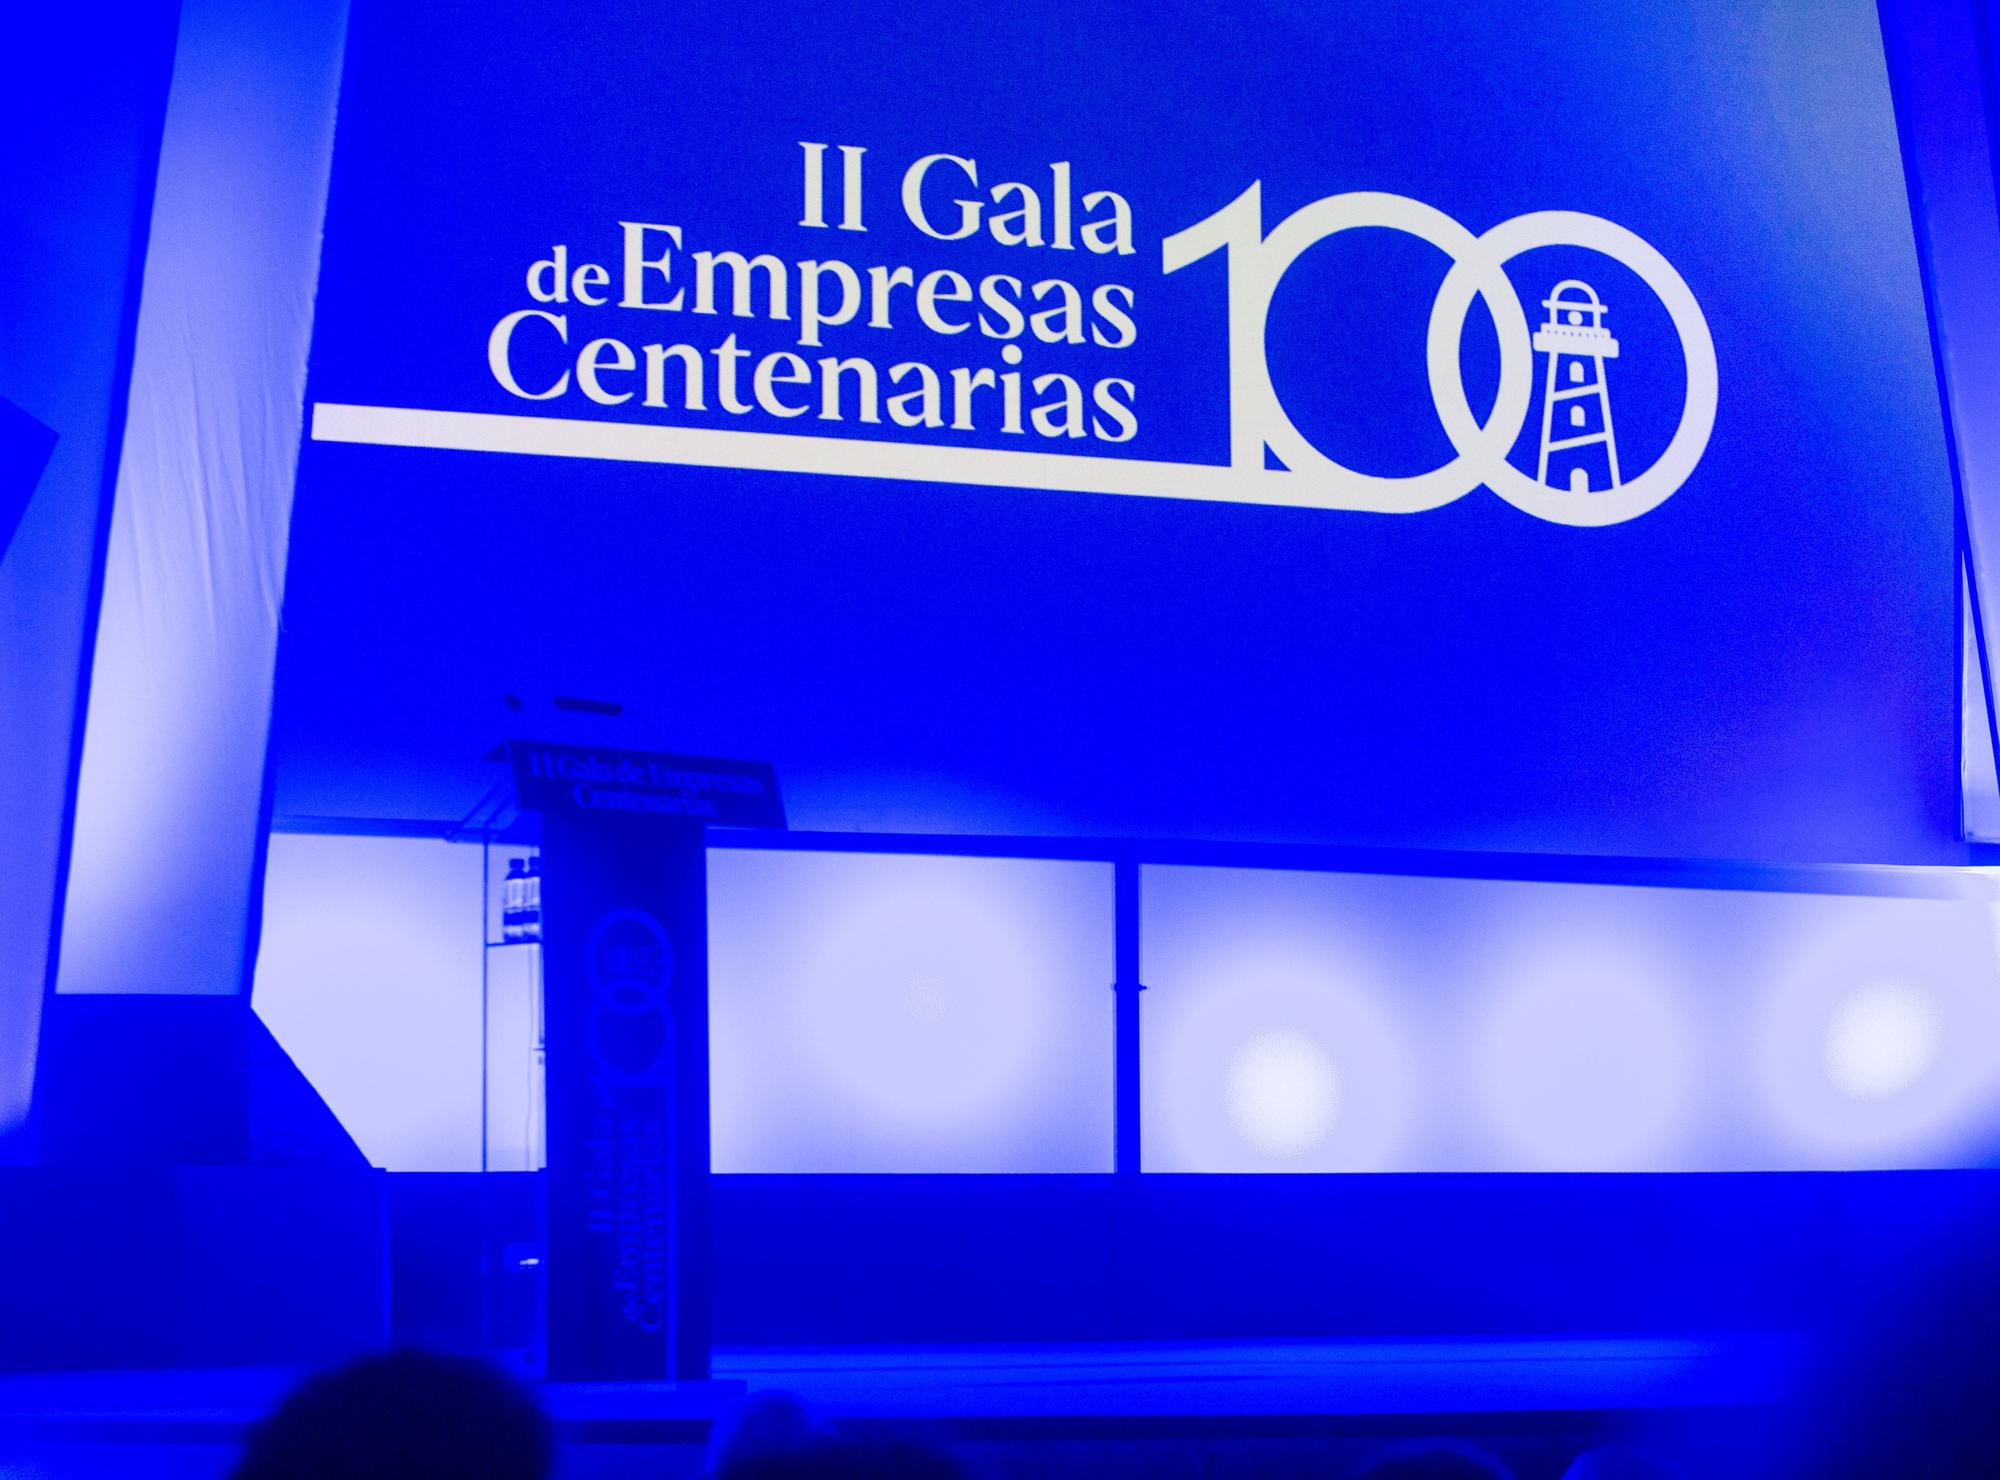 La Gala de Empresas Centenarias en imágenes